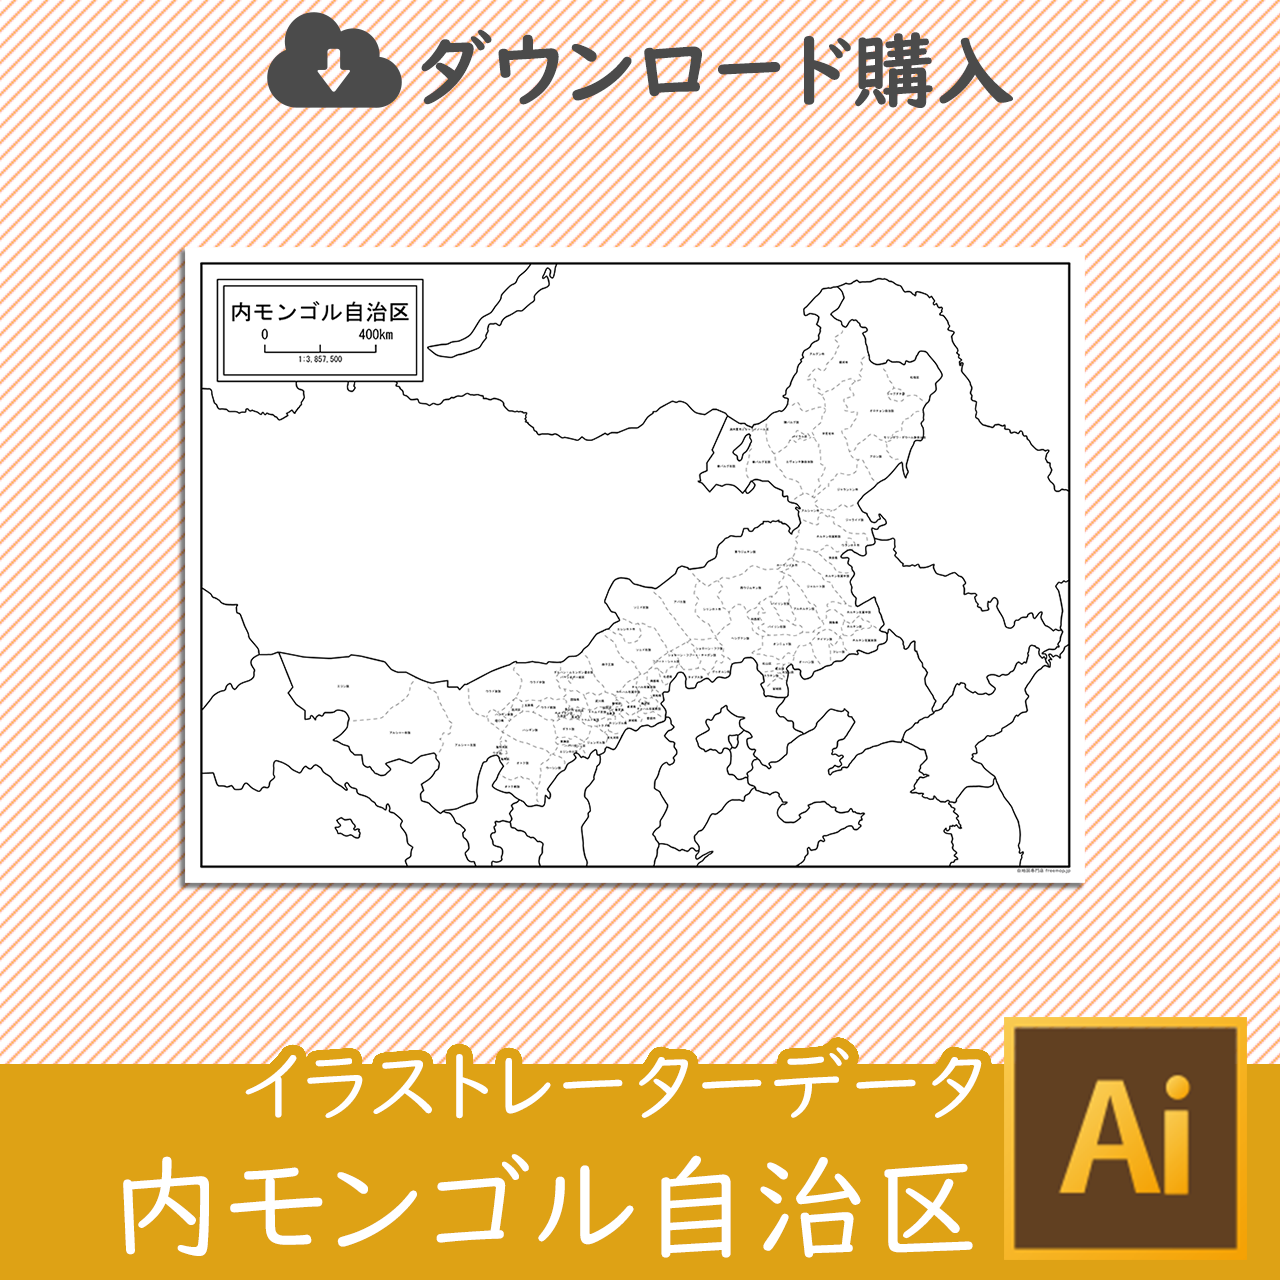 内モンゴル自治区の白地図データのサムネイル画像